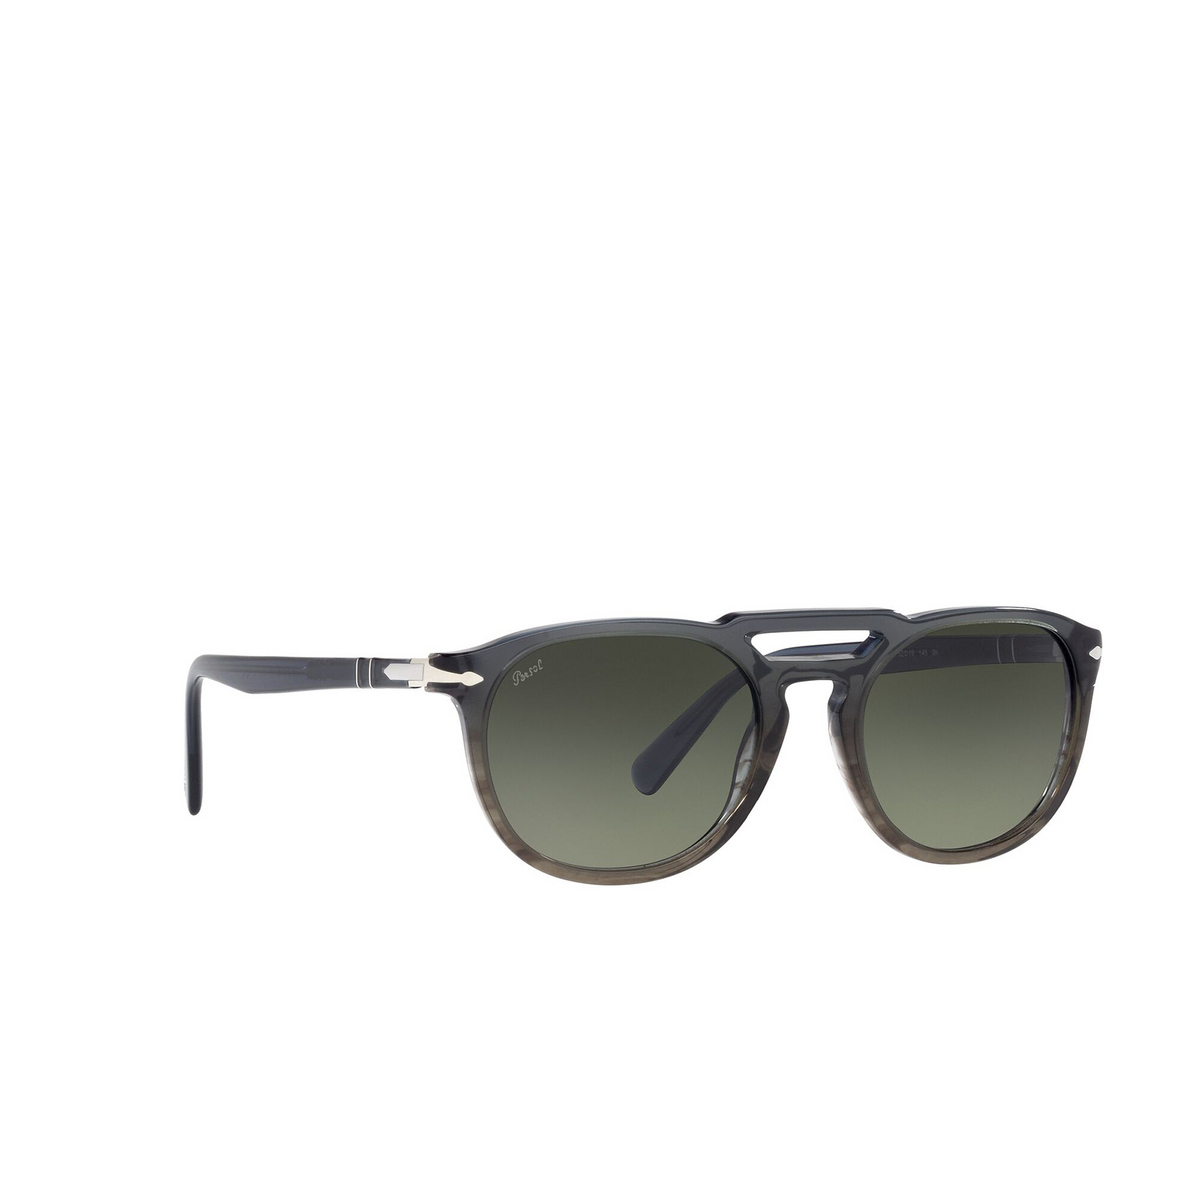 Persol® Square Sunglasses: PO3279S color Gray Gradient Striped Green 101271 - three-quarters view.